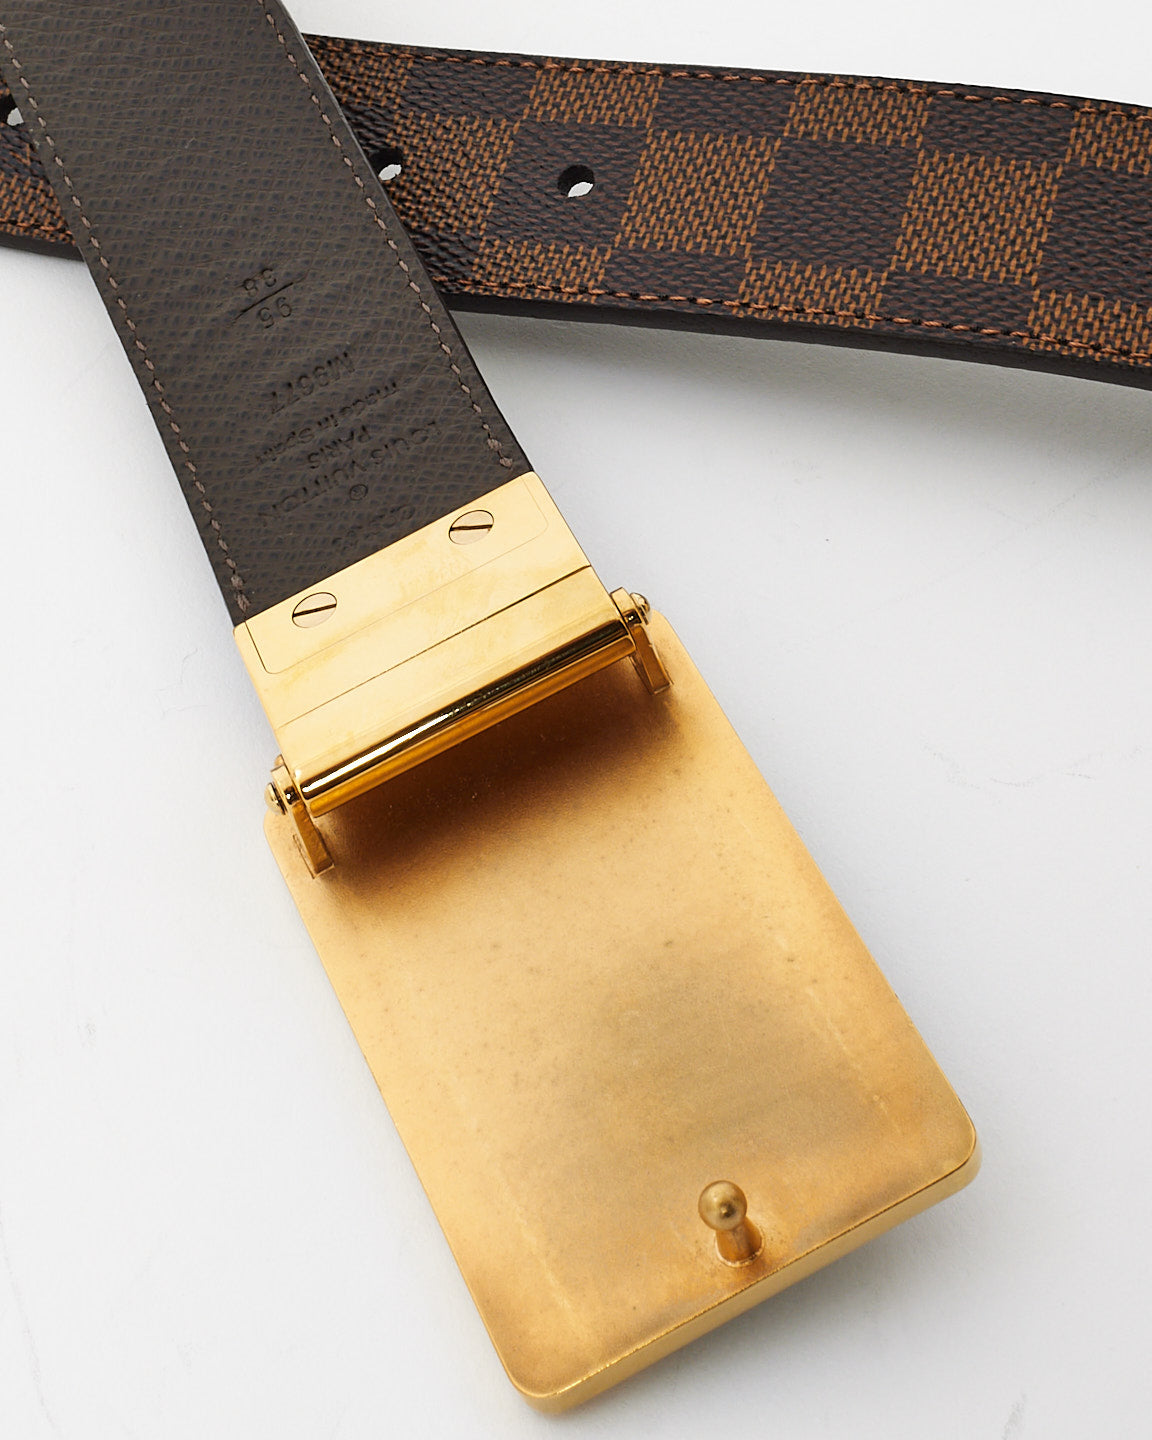 Louis Vuitton Brown Leather & Damier Ebene Canvas Gold Plate Inventeur Reversible Belt - 95/38